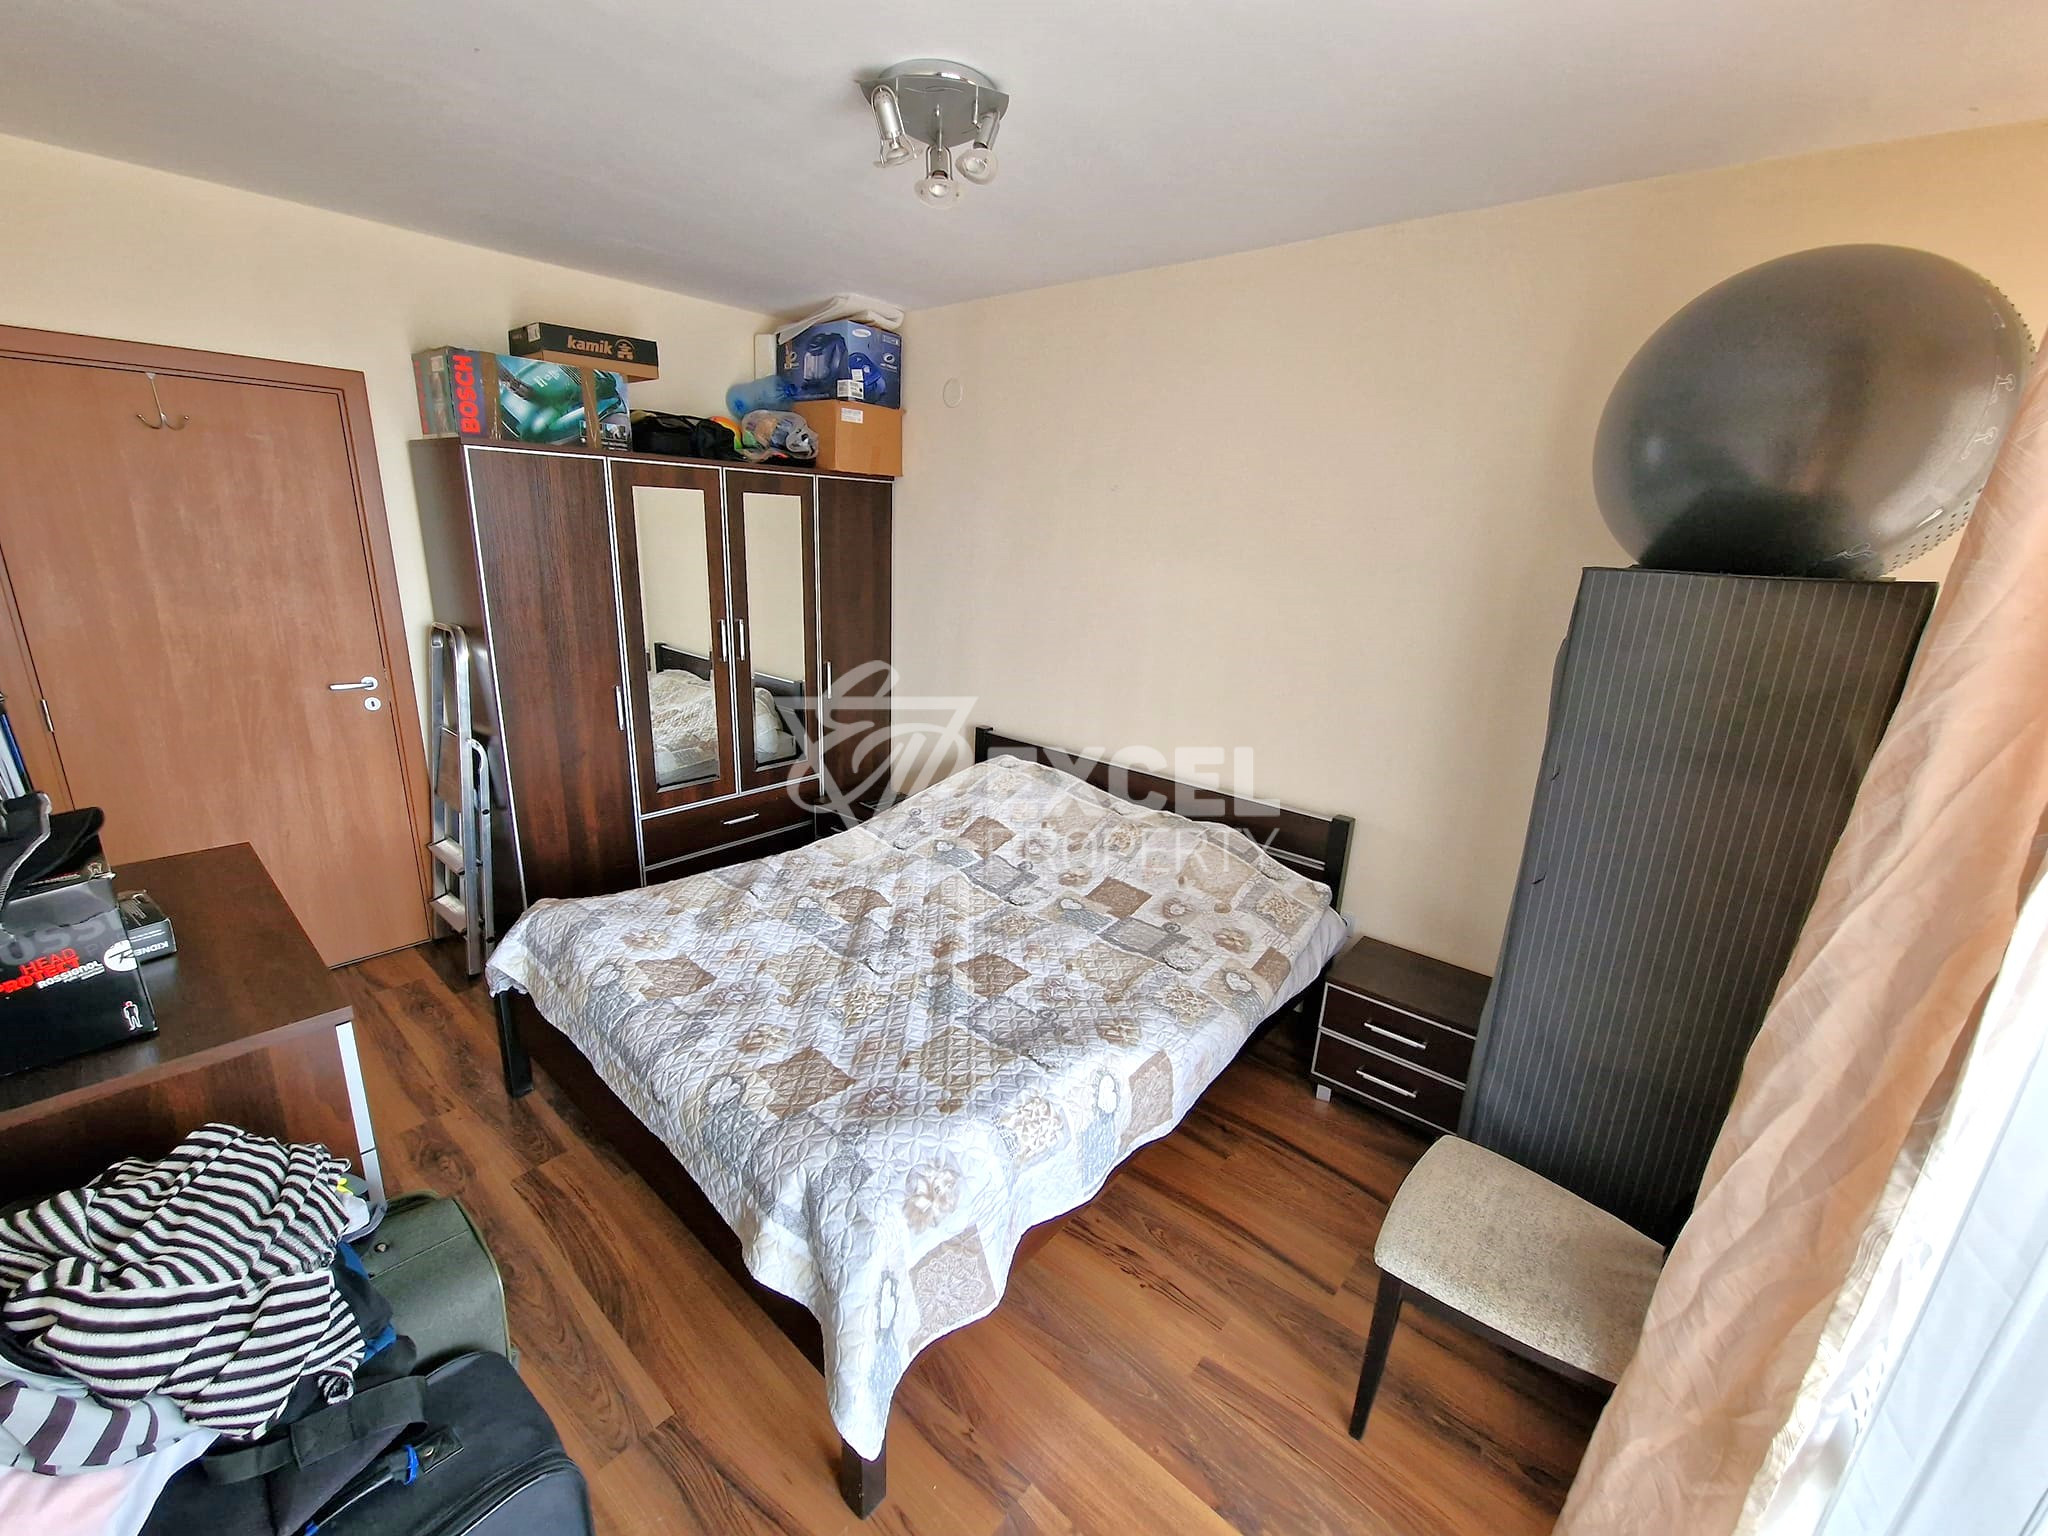 Продажа меблированной двухкомнатной квартиры в круглогодичном комплексе в Банско